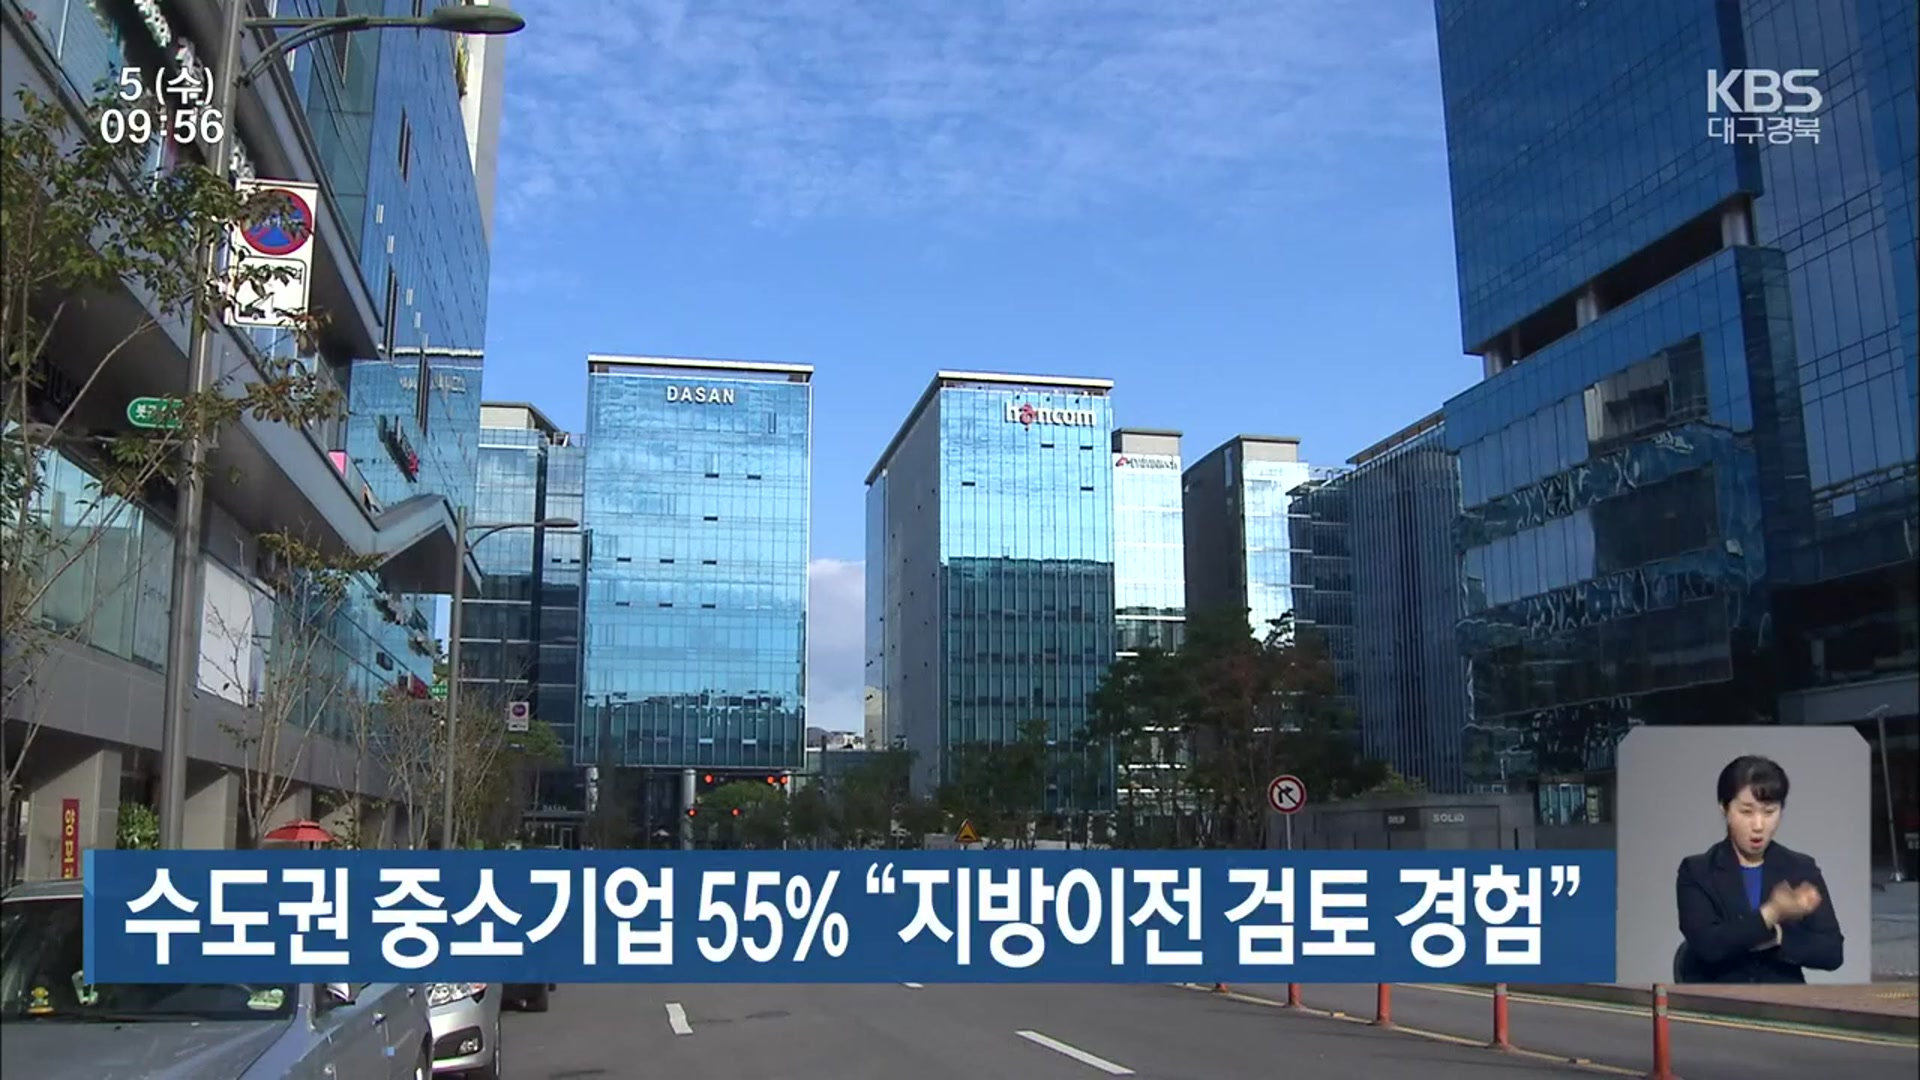 수도권 중소기업 55% “지방이전 검토 경험”